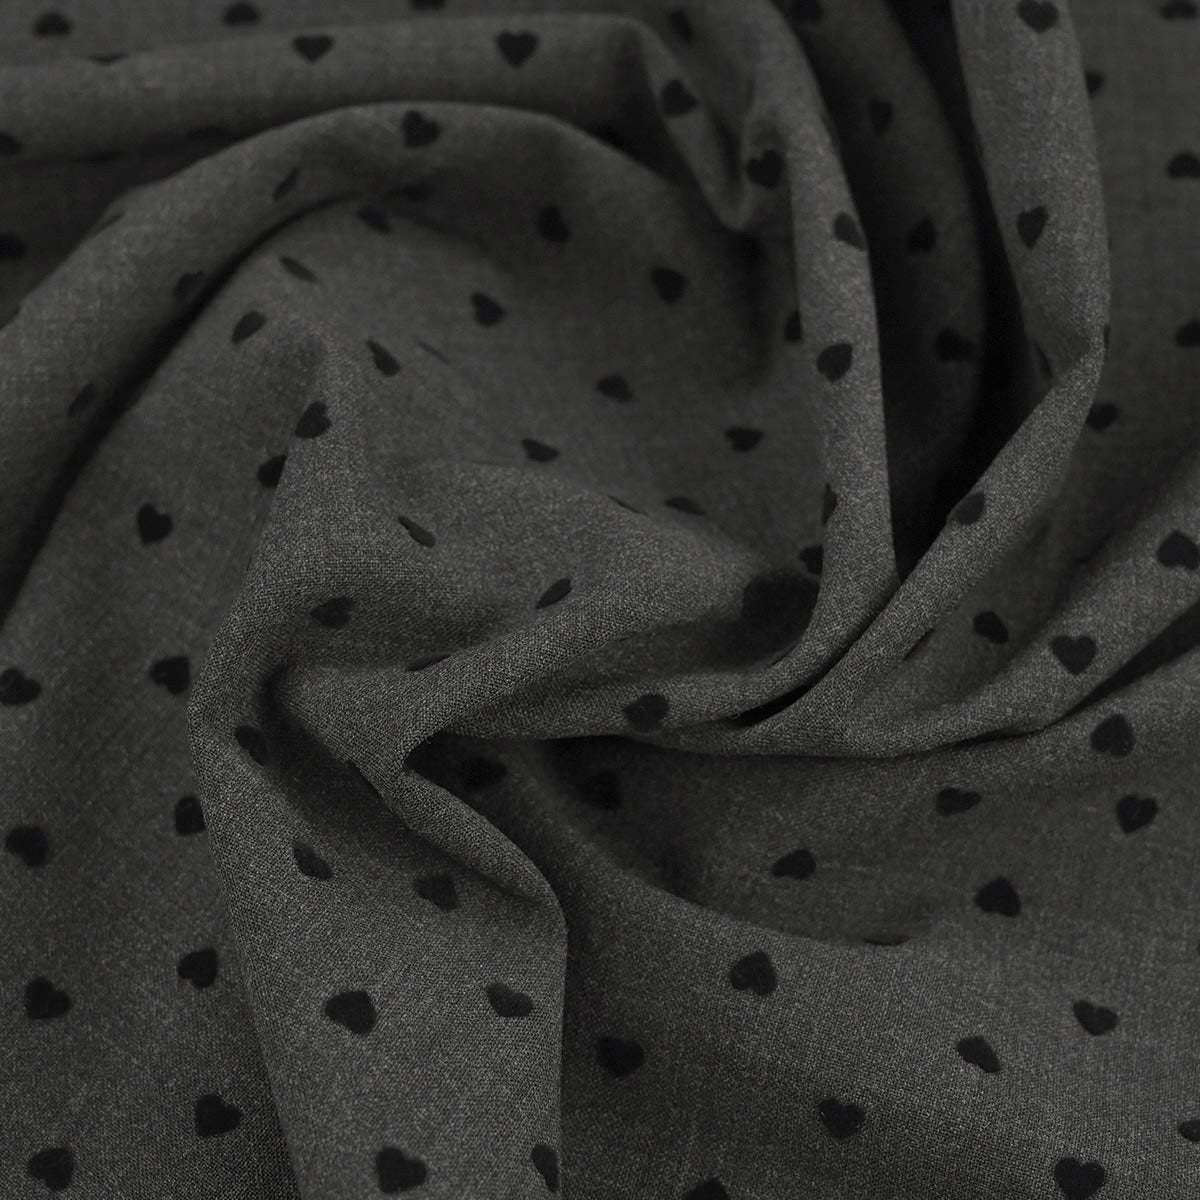 Black and White Dobby Fabric 949